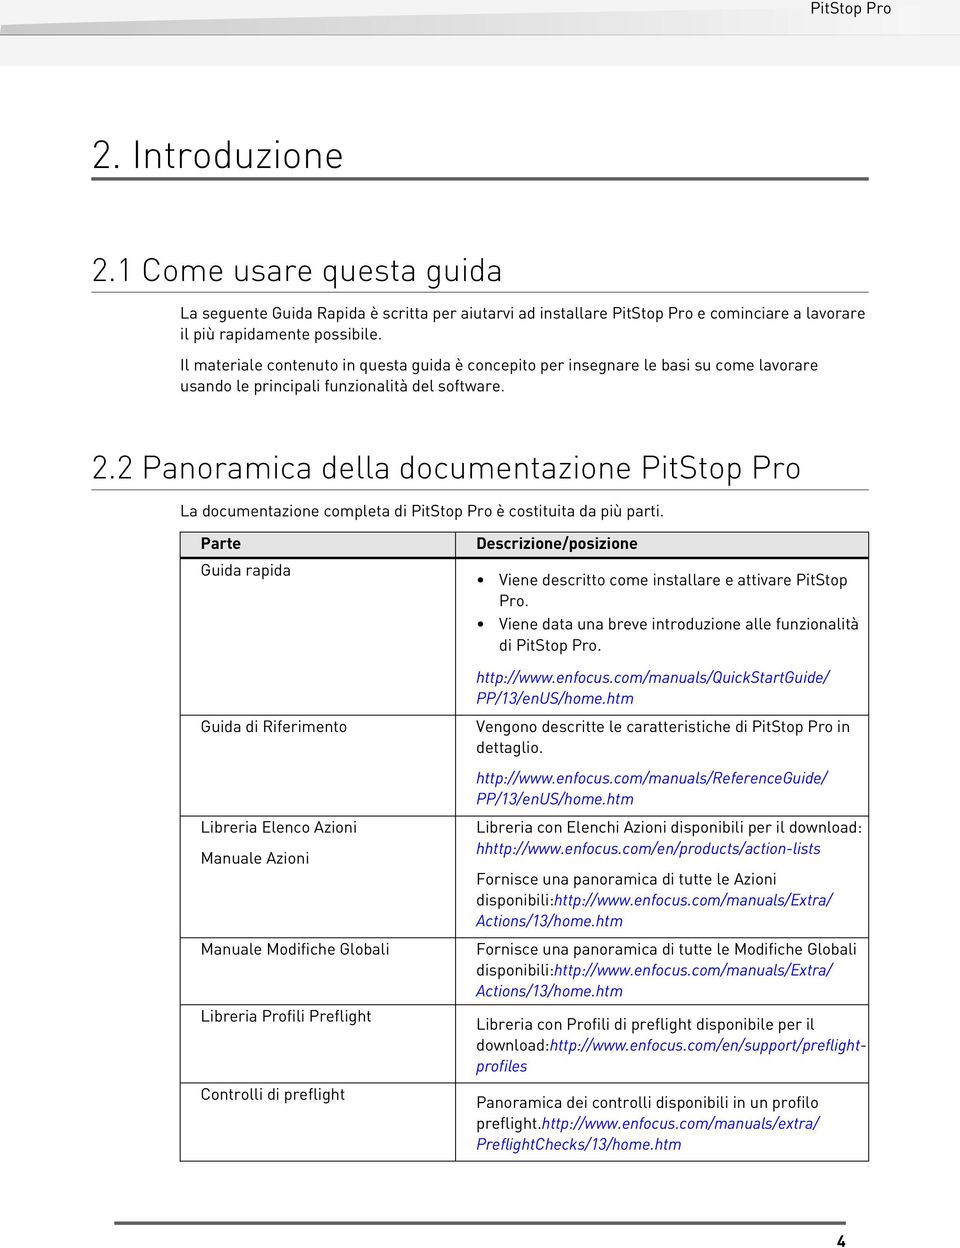 2 Panoramica della documentazione PitStop Pro La documentazione completa di PitStop Pro è costituita da più parti.